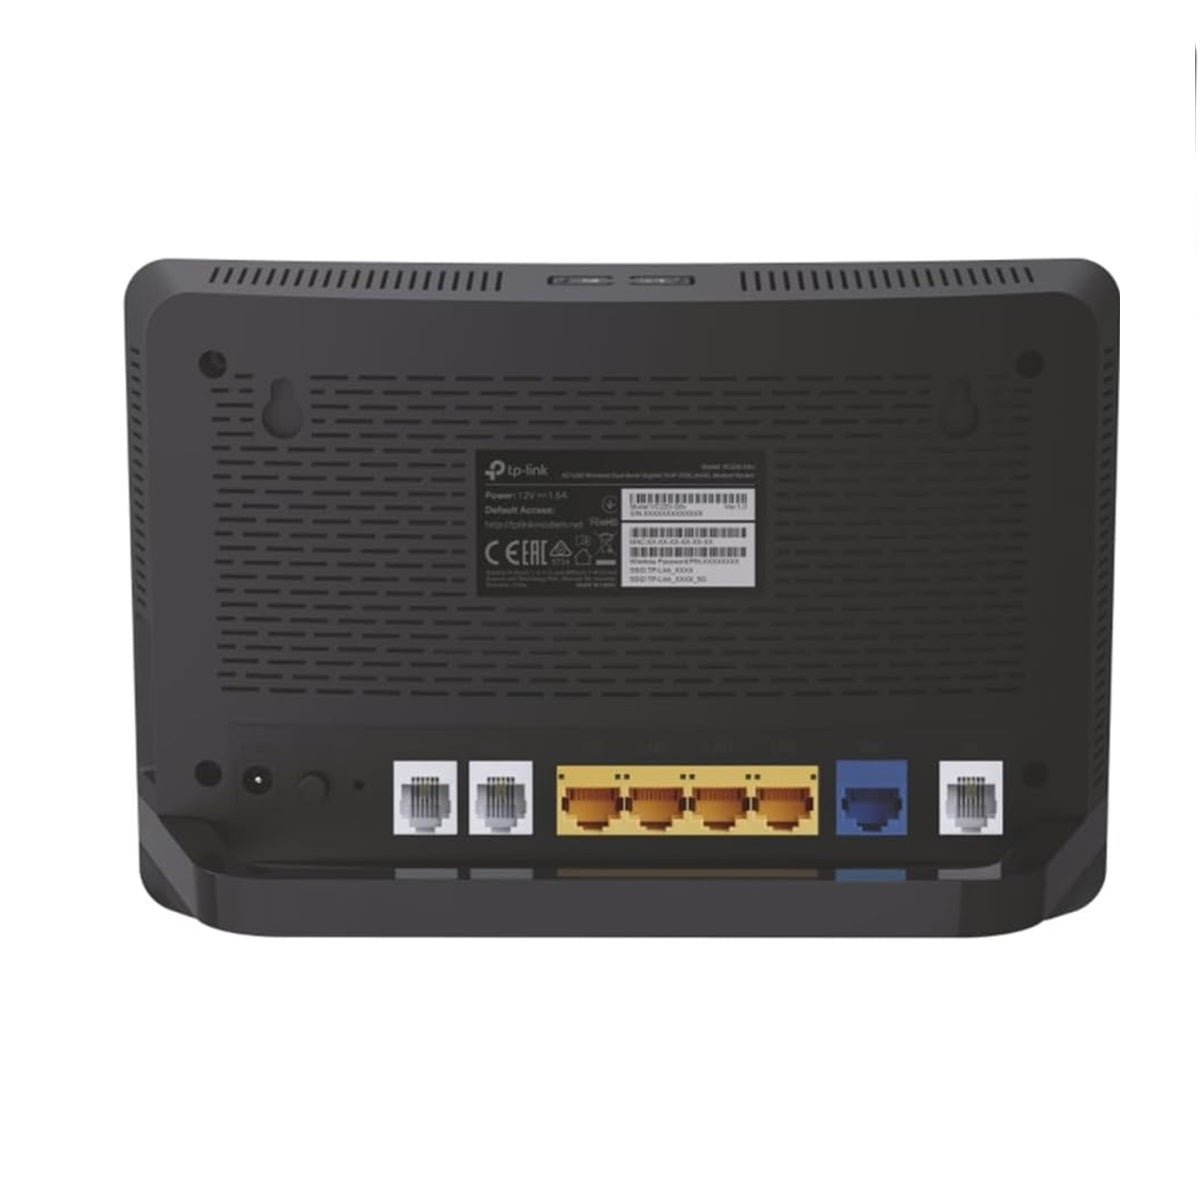 TP-Link Archer VR1210v Modem Router Dual Band Gigabit VoIP VDSL